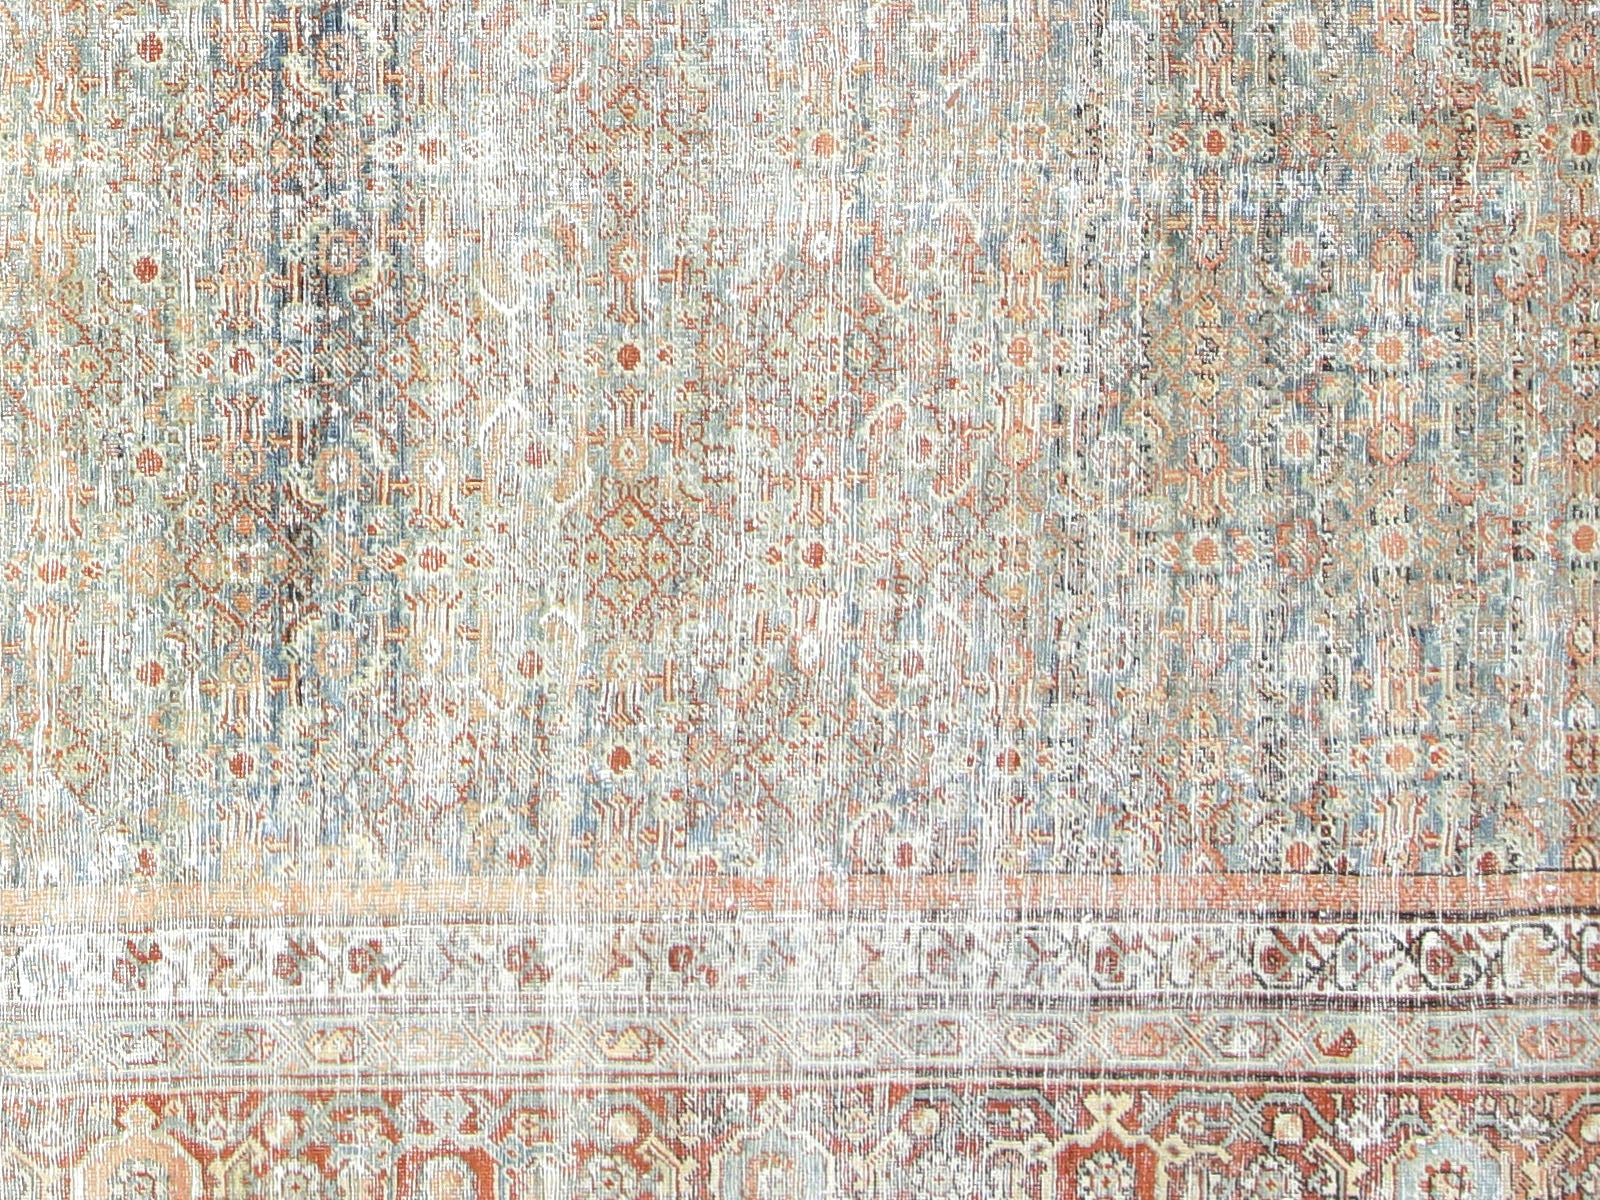 Antique Persian Mahal Rug - 8' x 20'2"